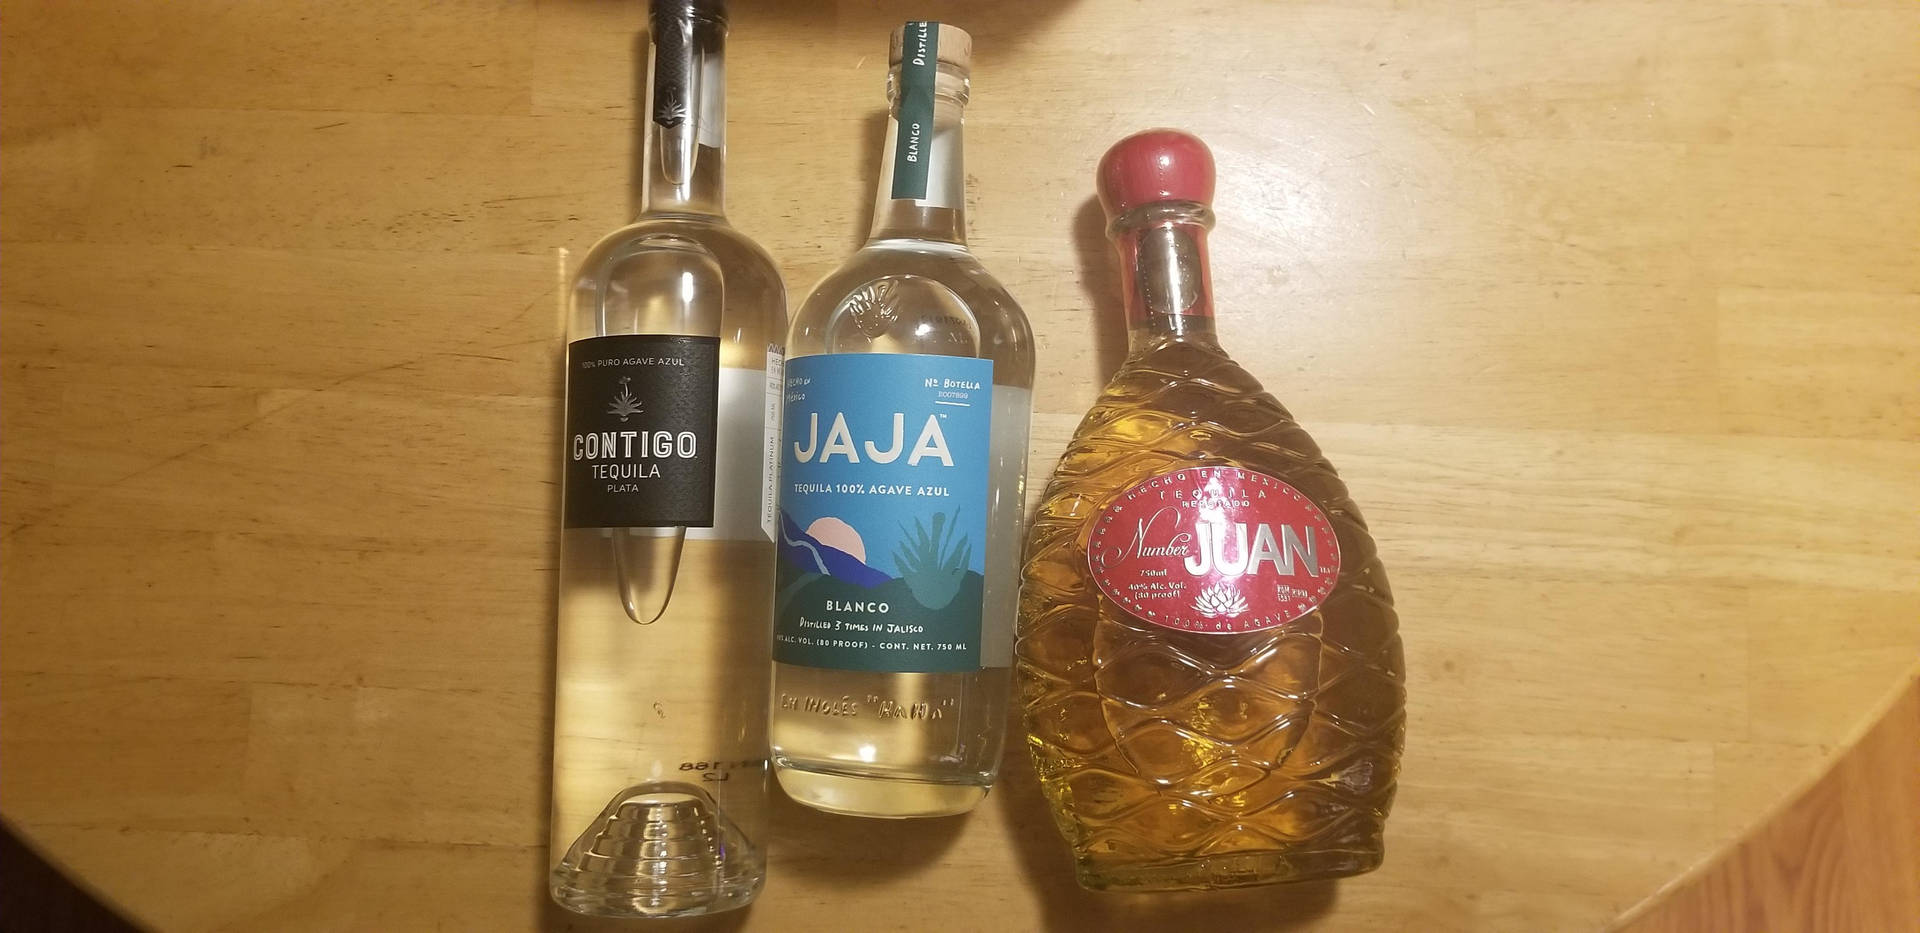 Jaja Tequila With Contigo and Number Juan Wallpaper